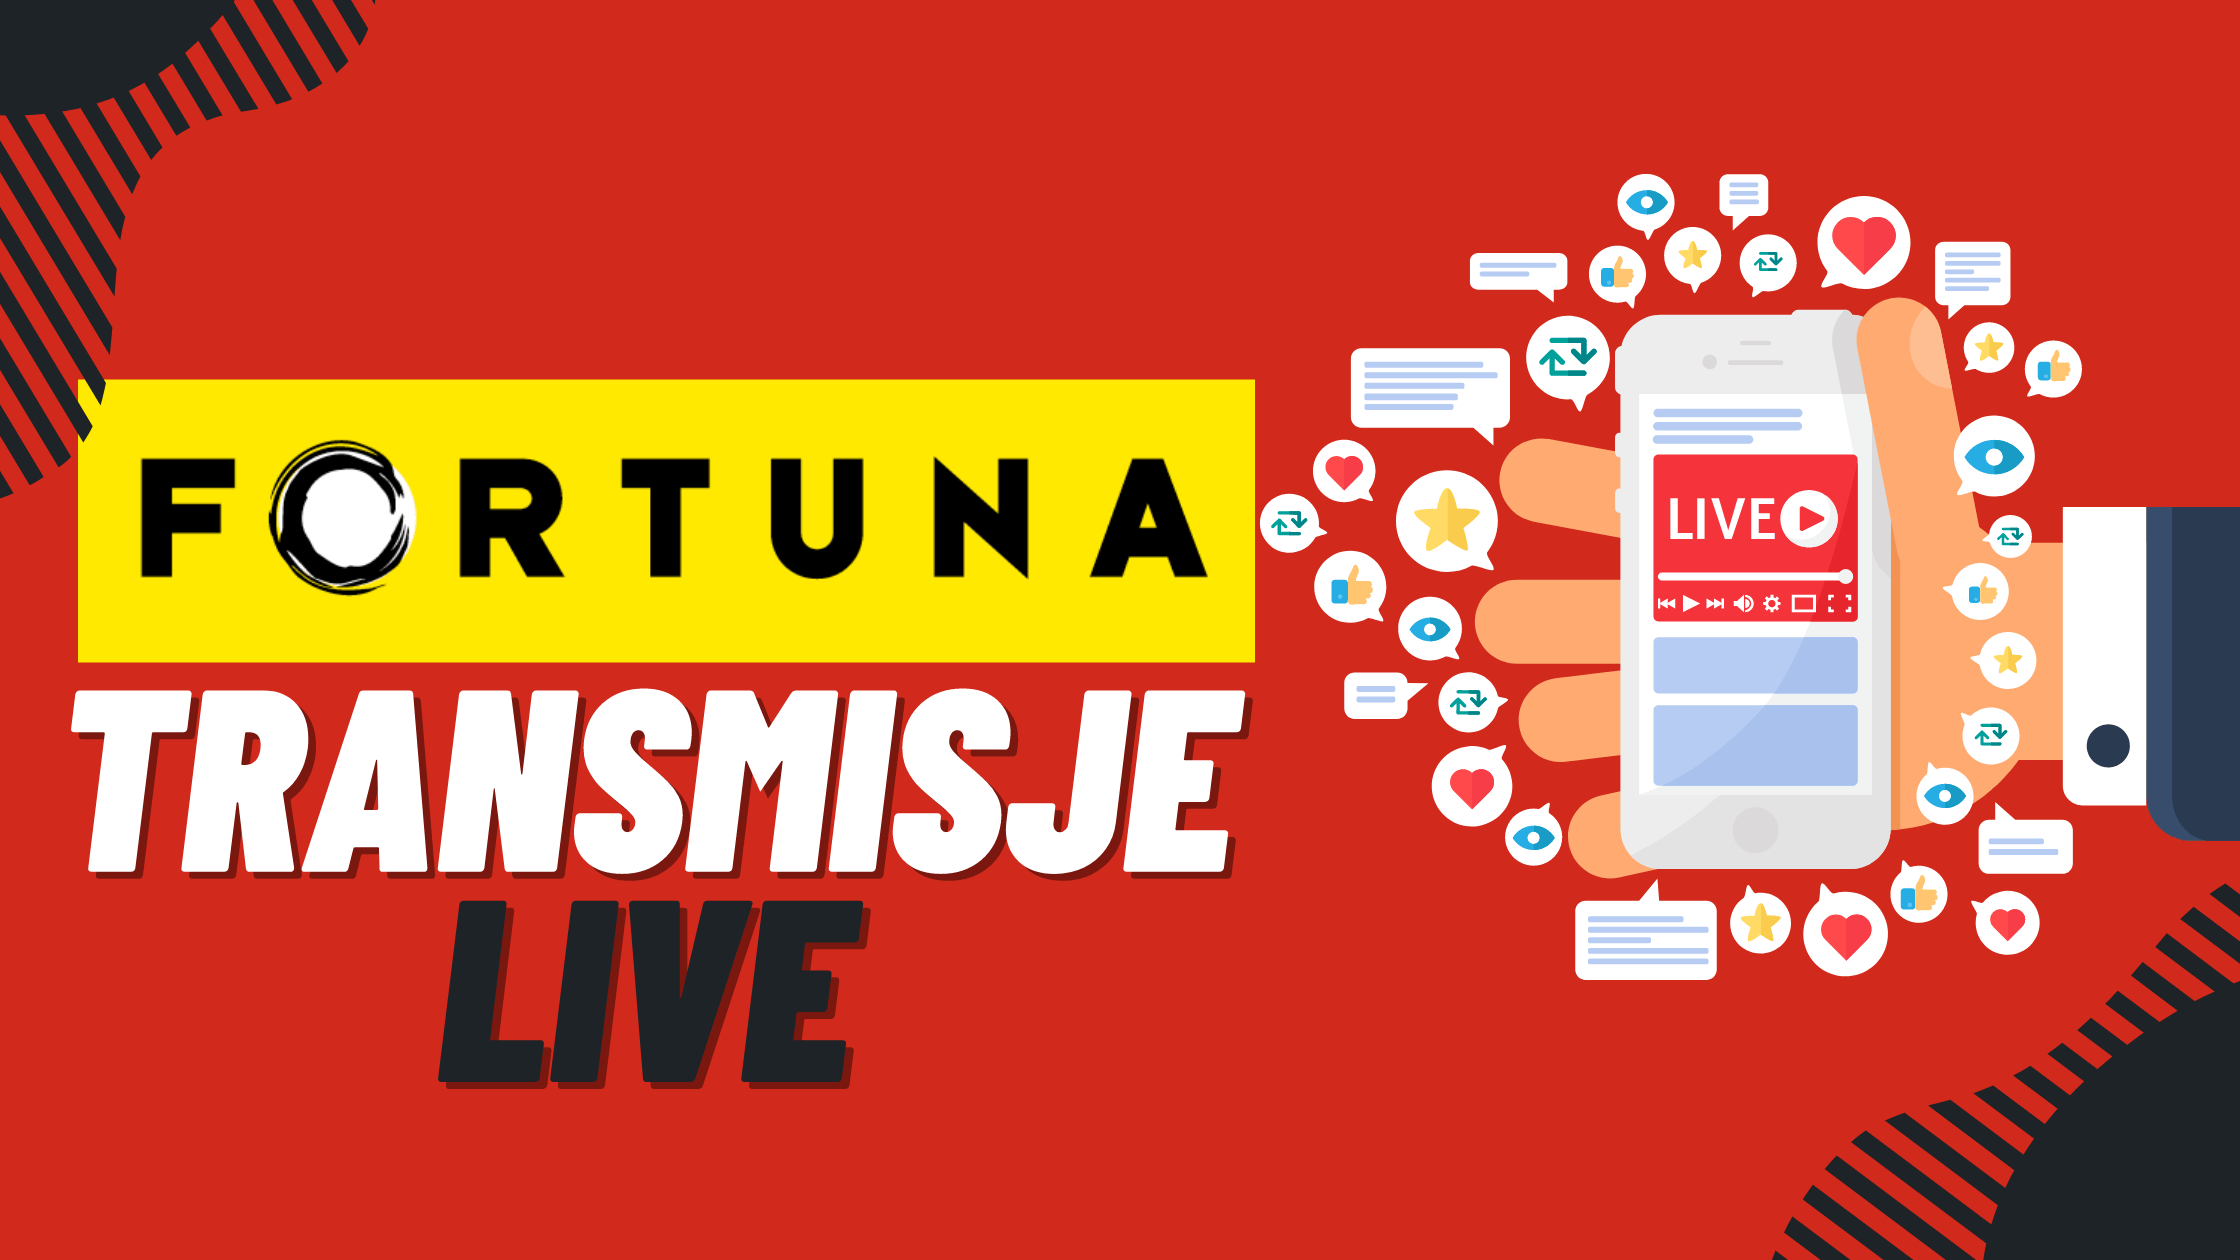 Legalny polski bukmacher Fortuna transmisje live w aplikacji mobilnej